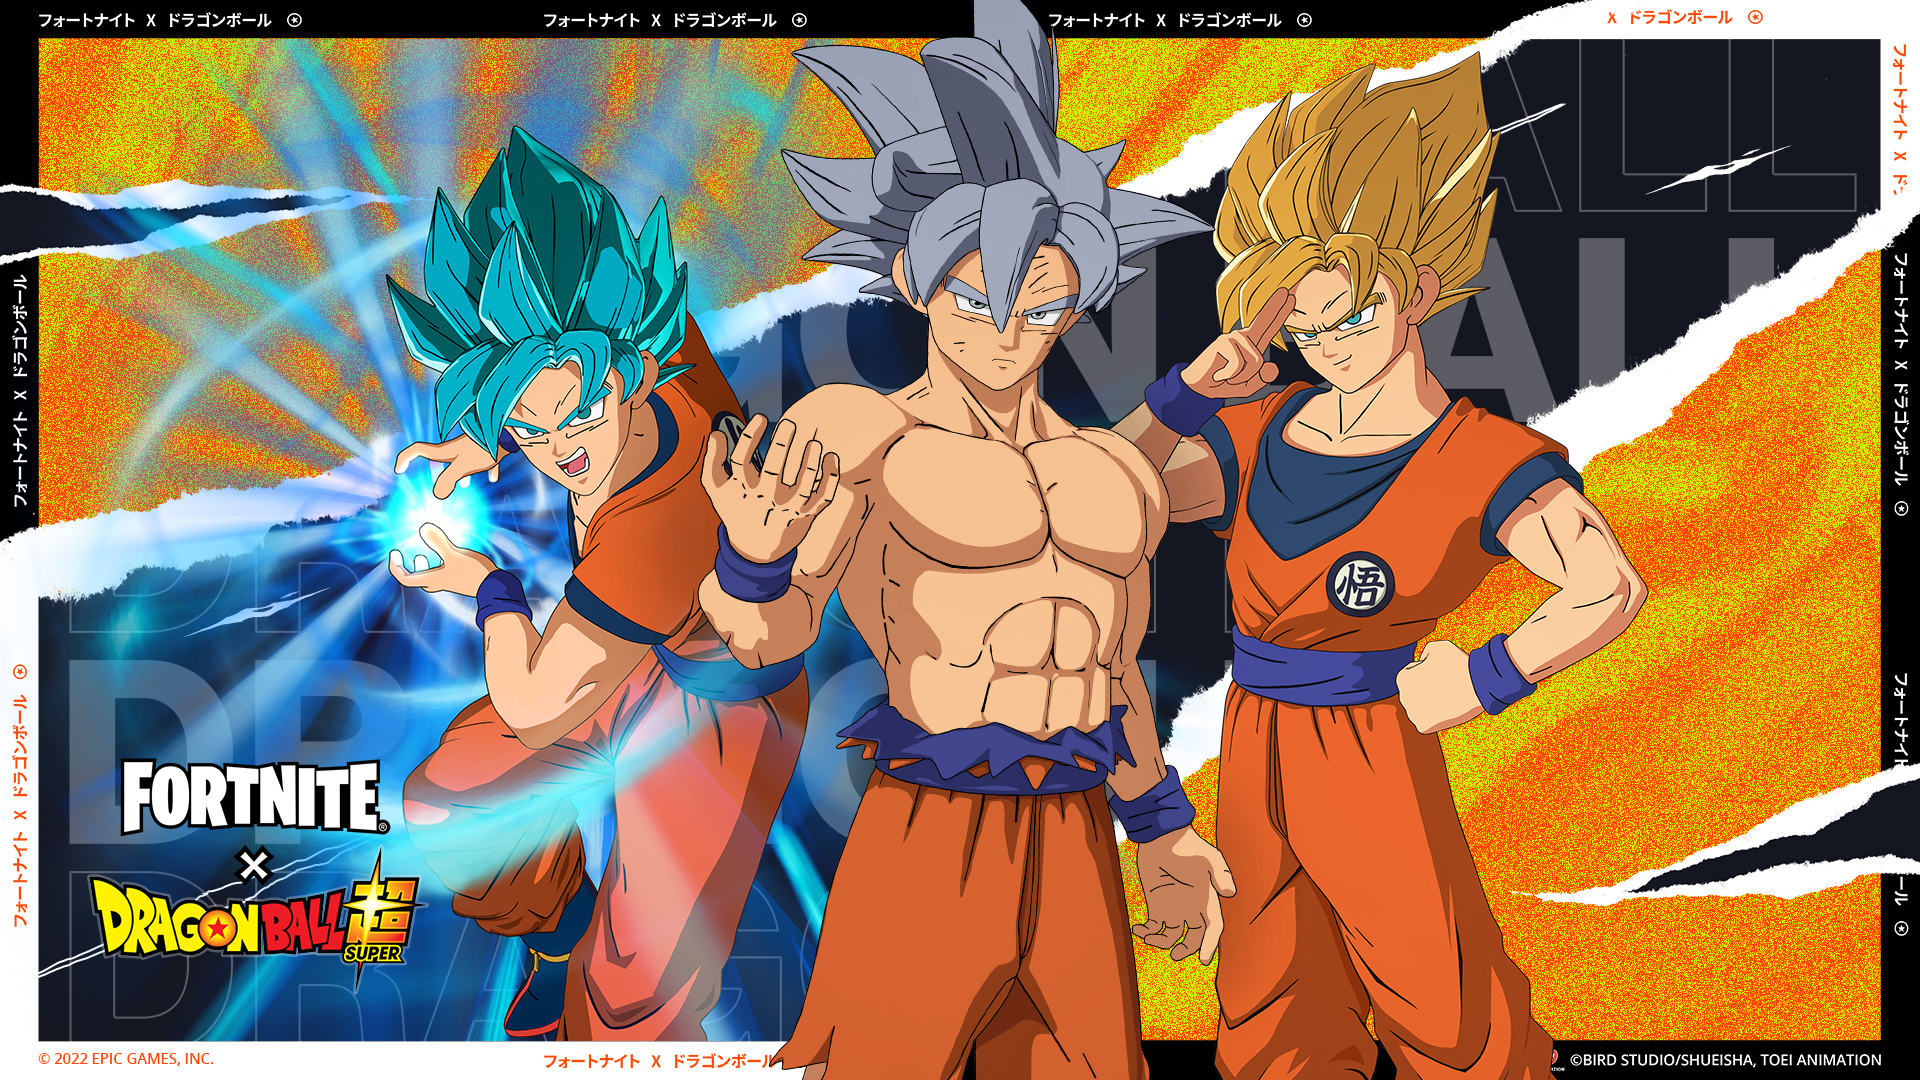 unocero - Goku y compañía sacan sus mejores pasos de baile en Fortnite,  checalos